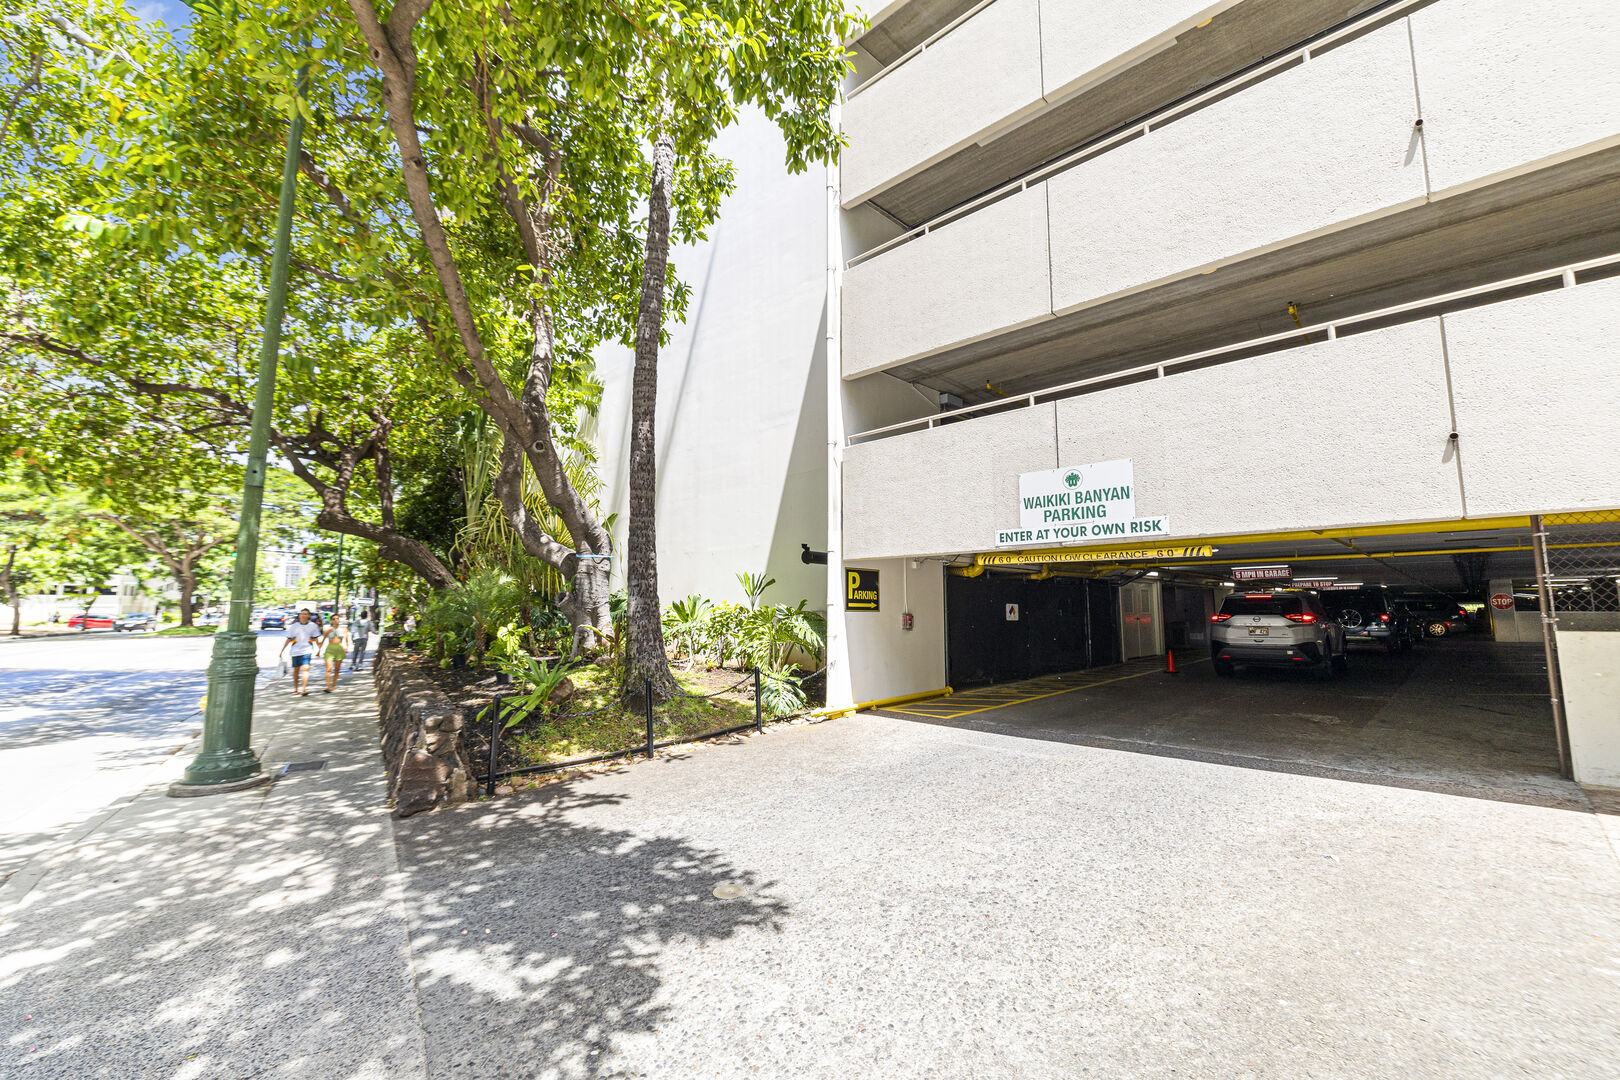 Waikiki Banyan Parking entrance from Kuhio Street